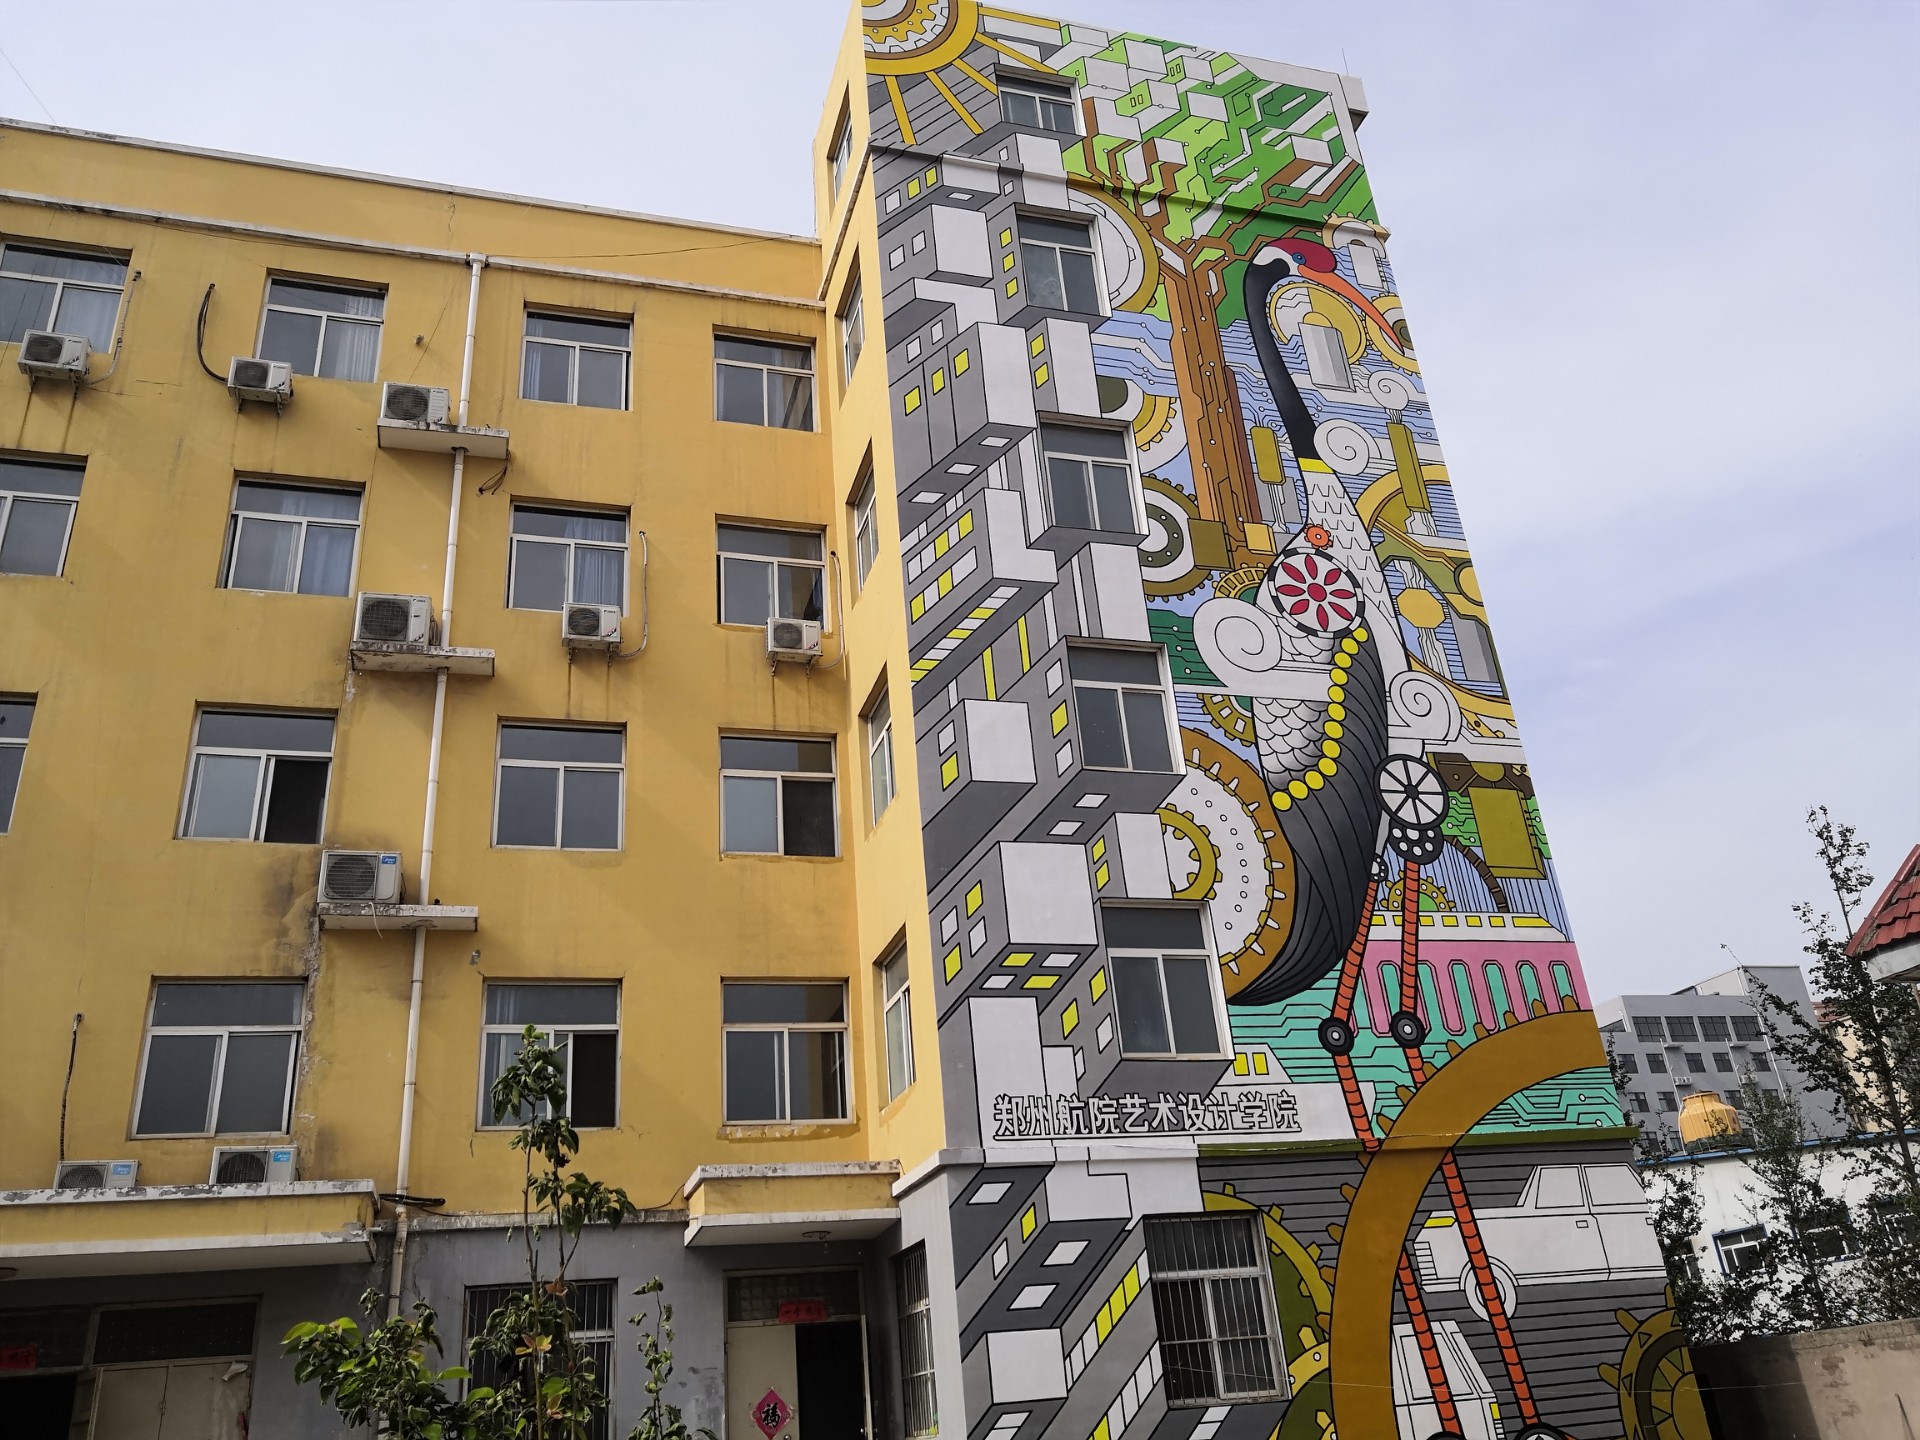 【高耸建筑彩绘项目】——鹤壁市政文化墙彩绘案例